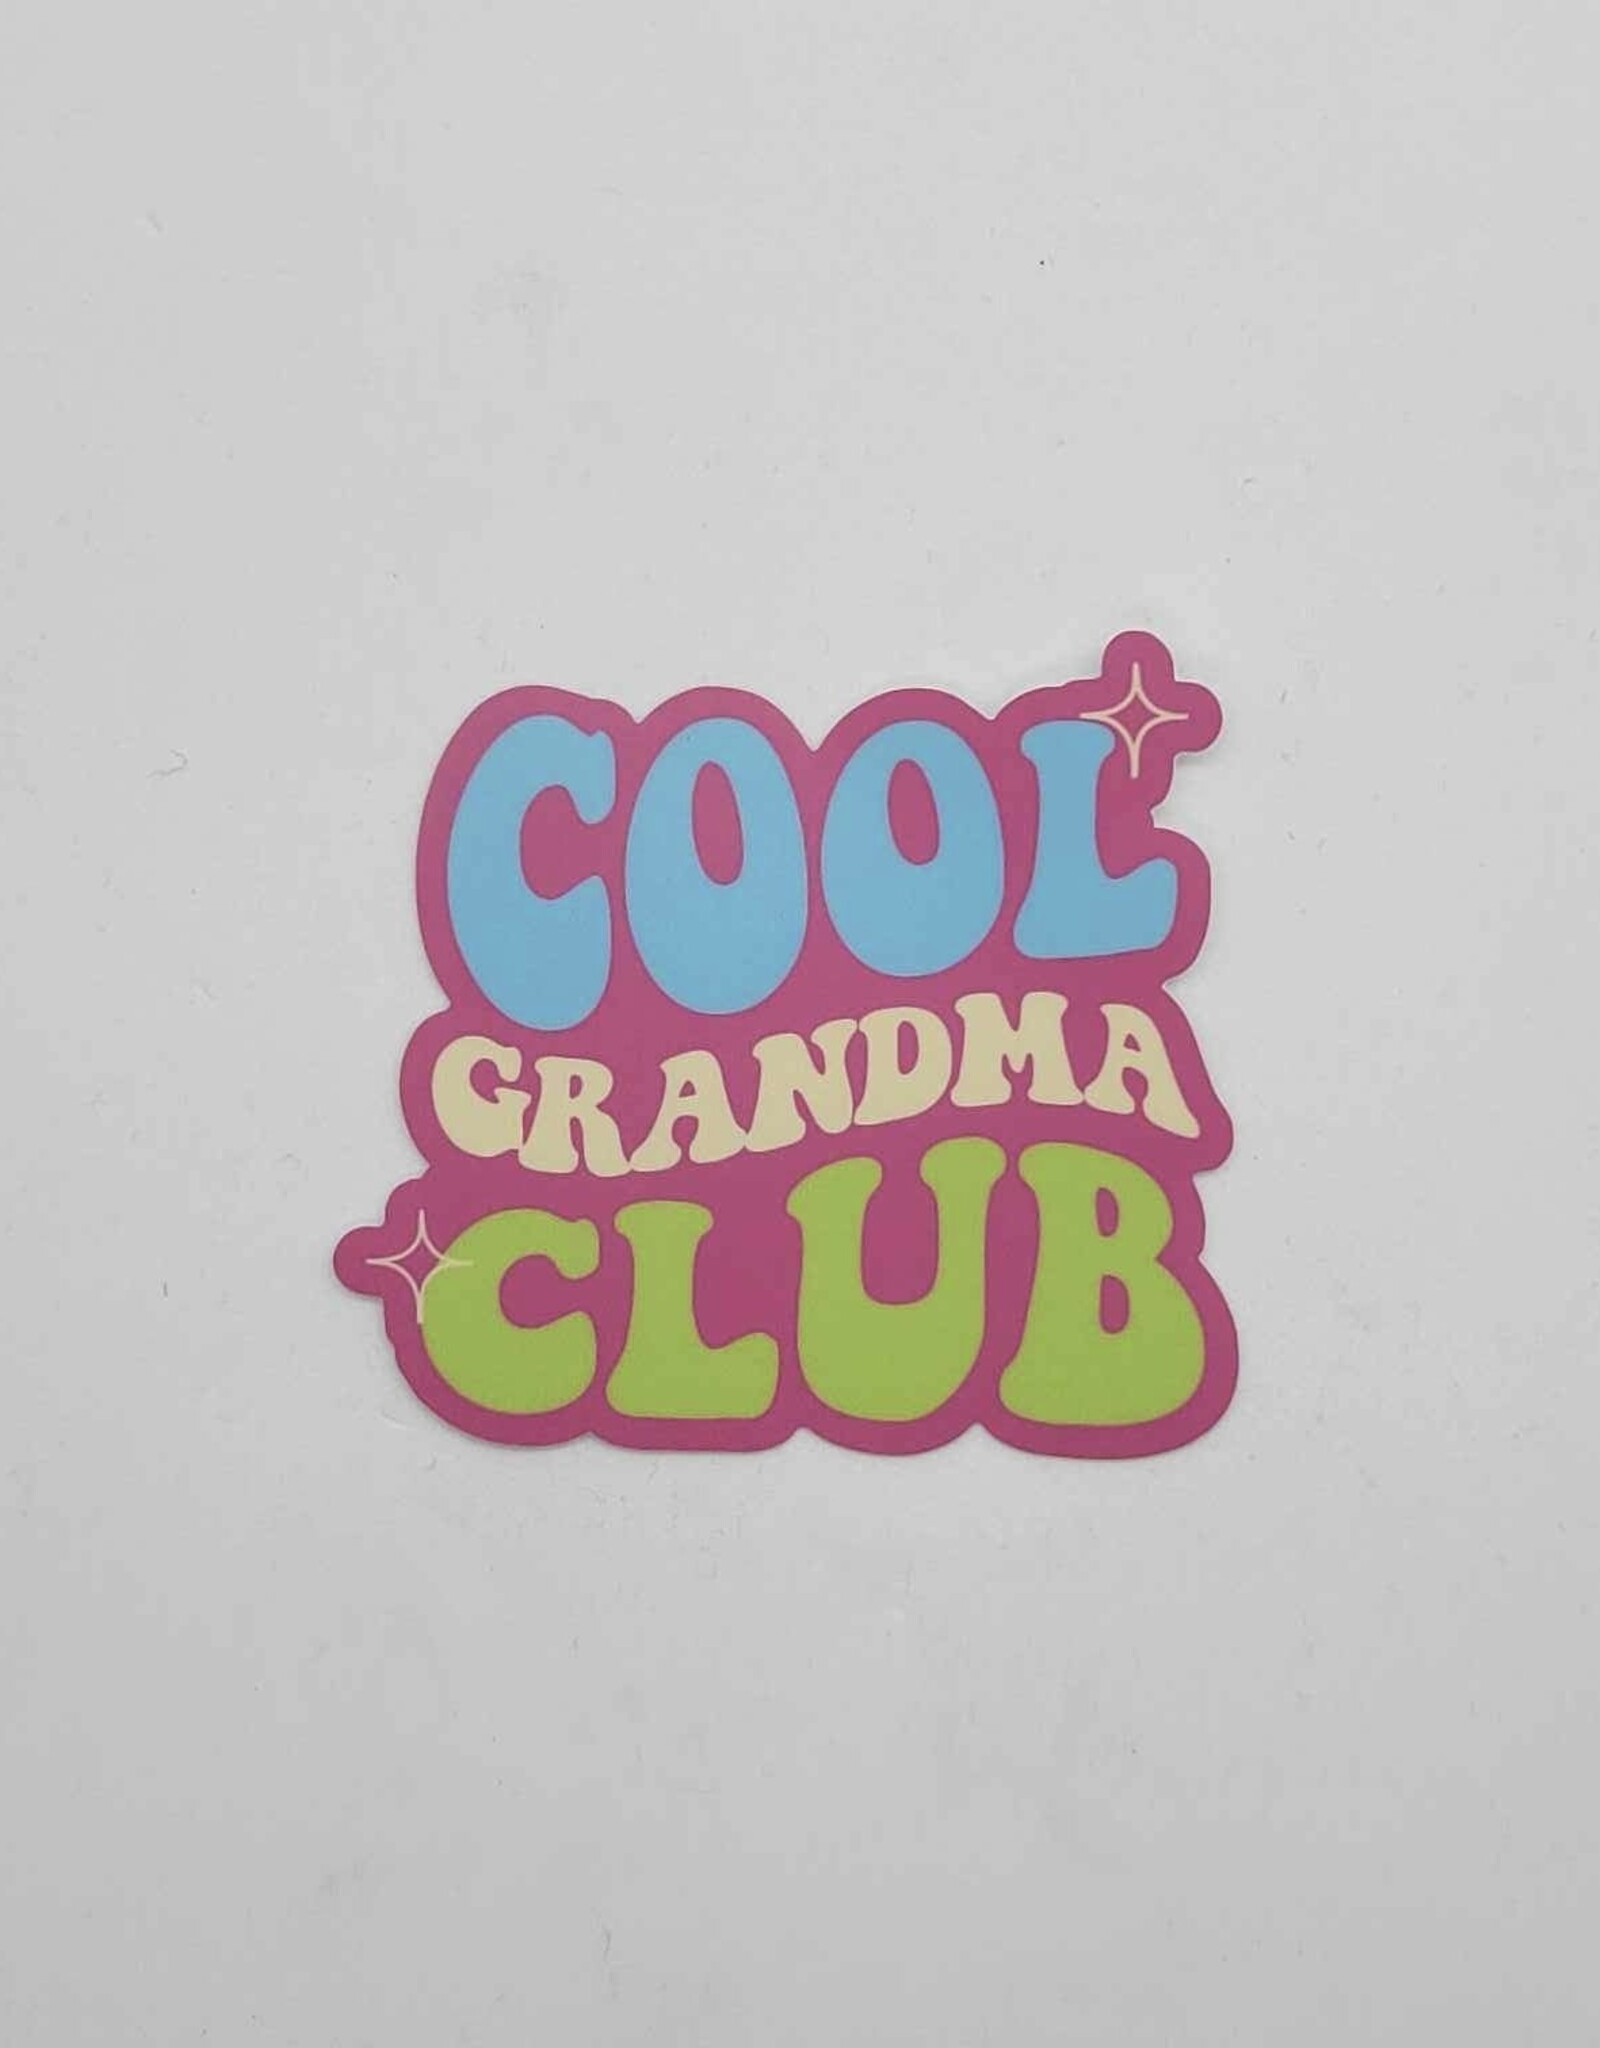 Big Moods Stickers Cool Grandma Club Sticker